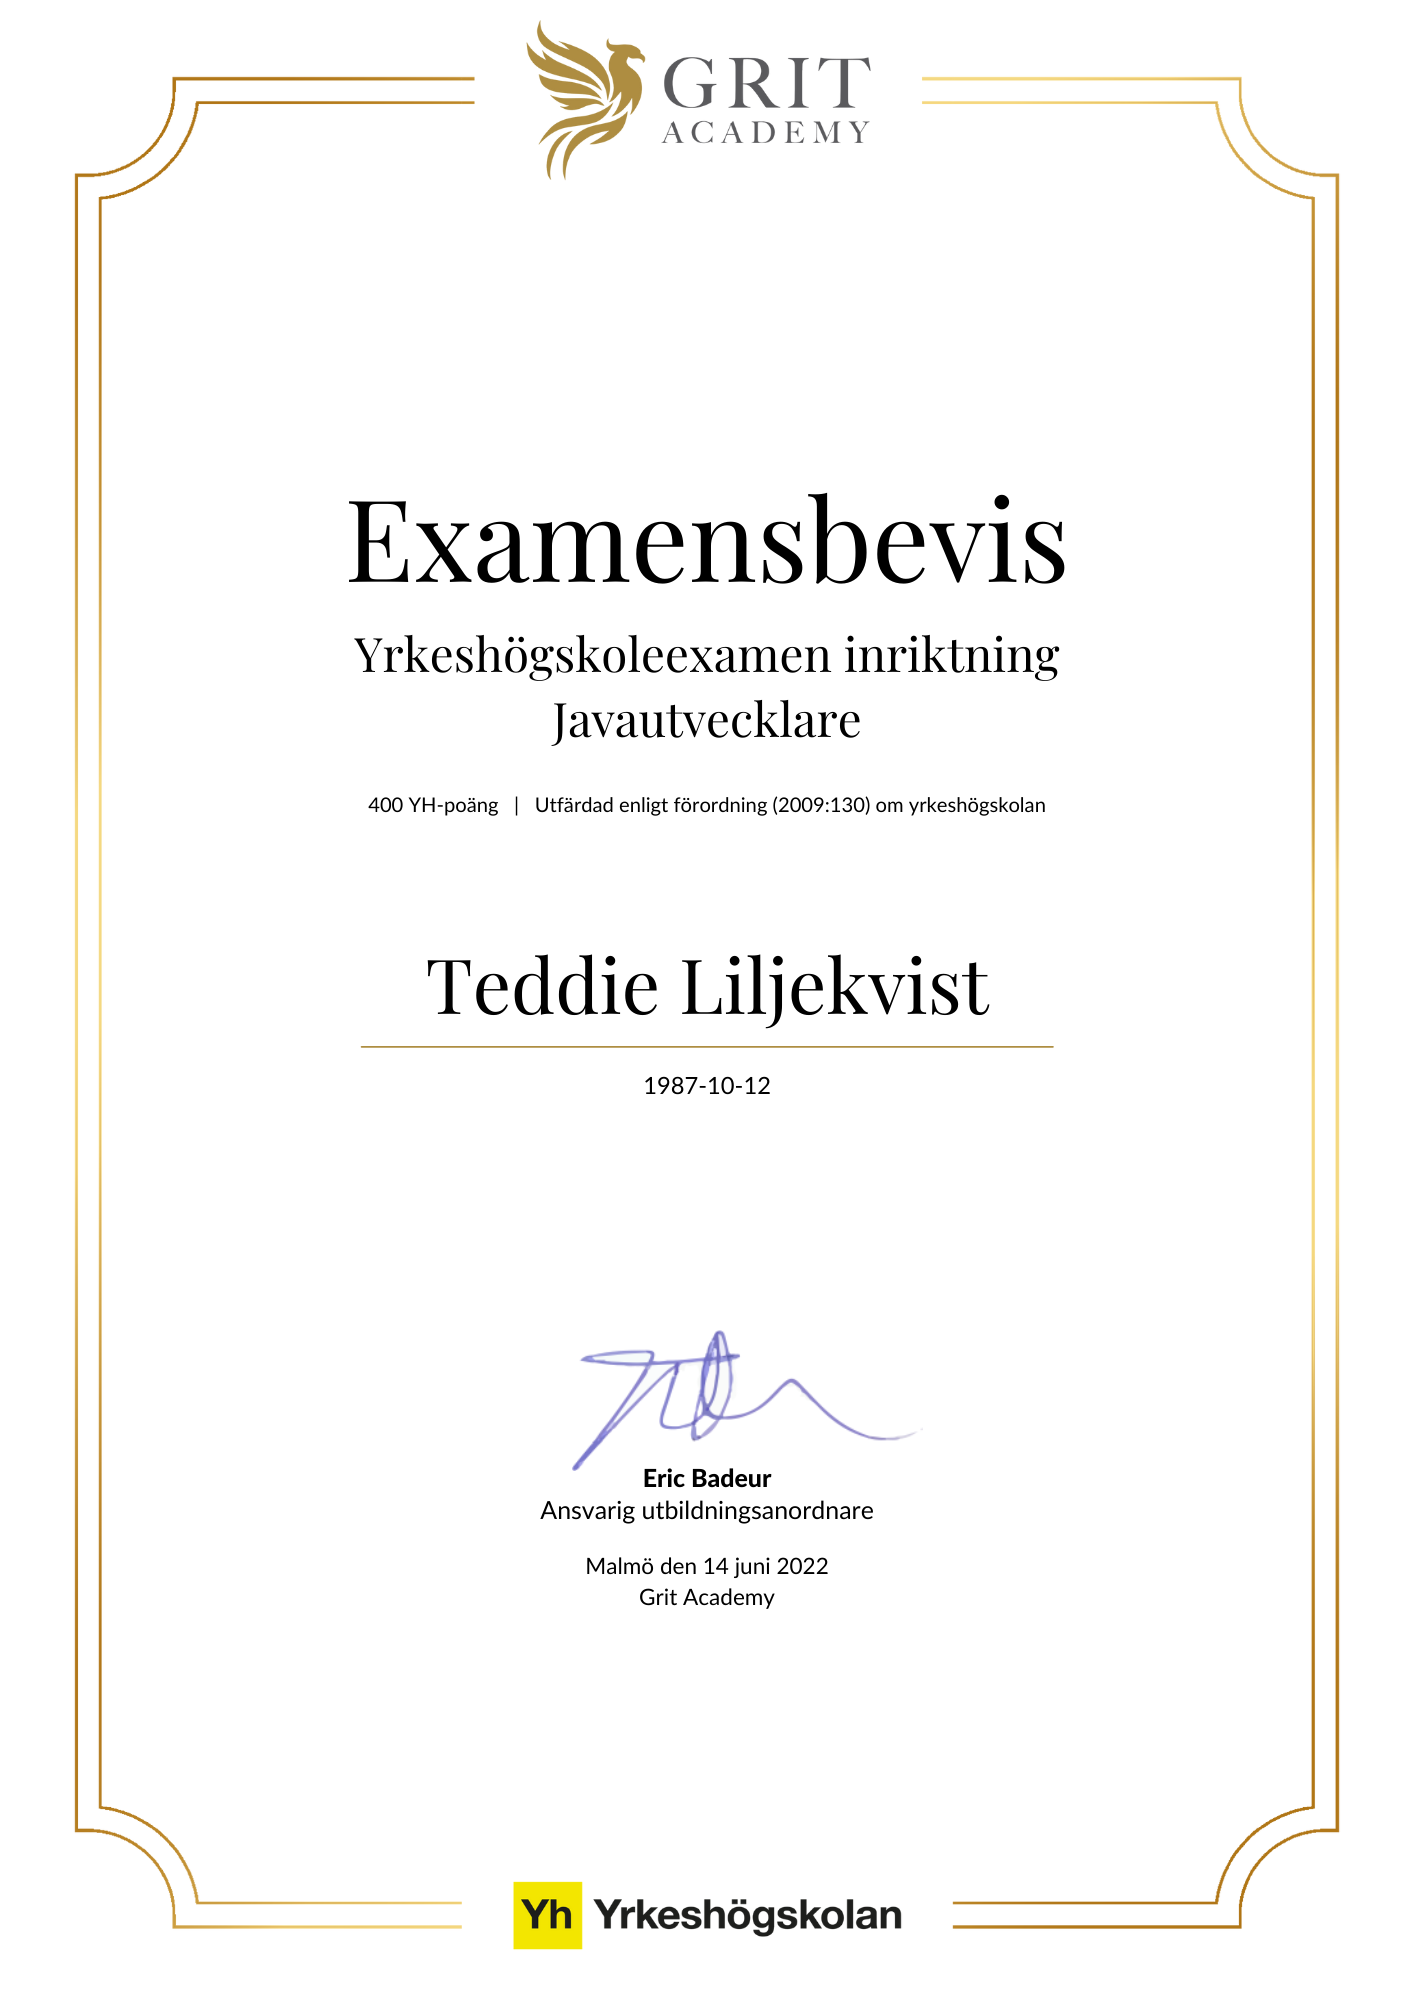 Examensbevis Teddie Liljekvist - 1